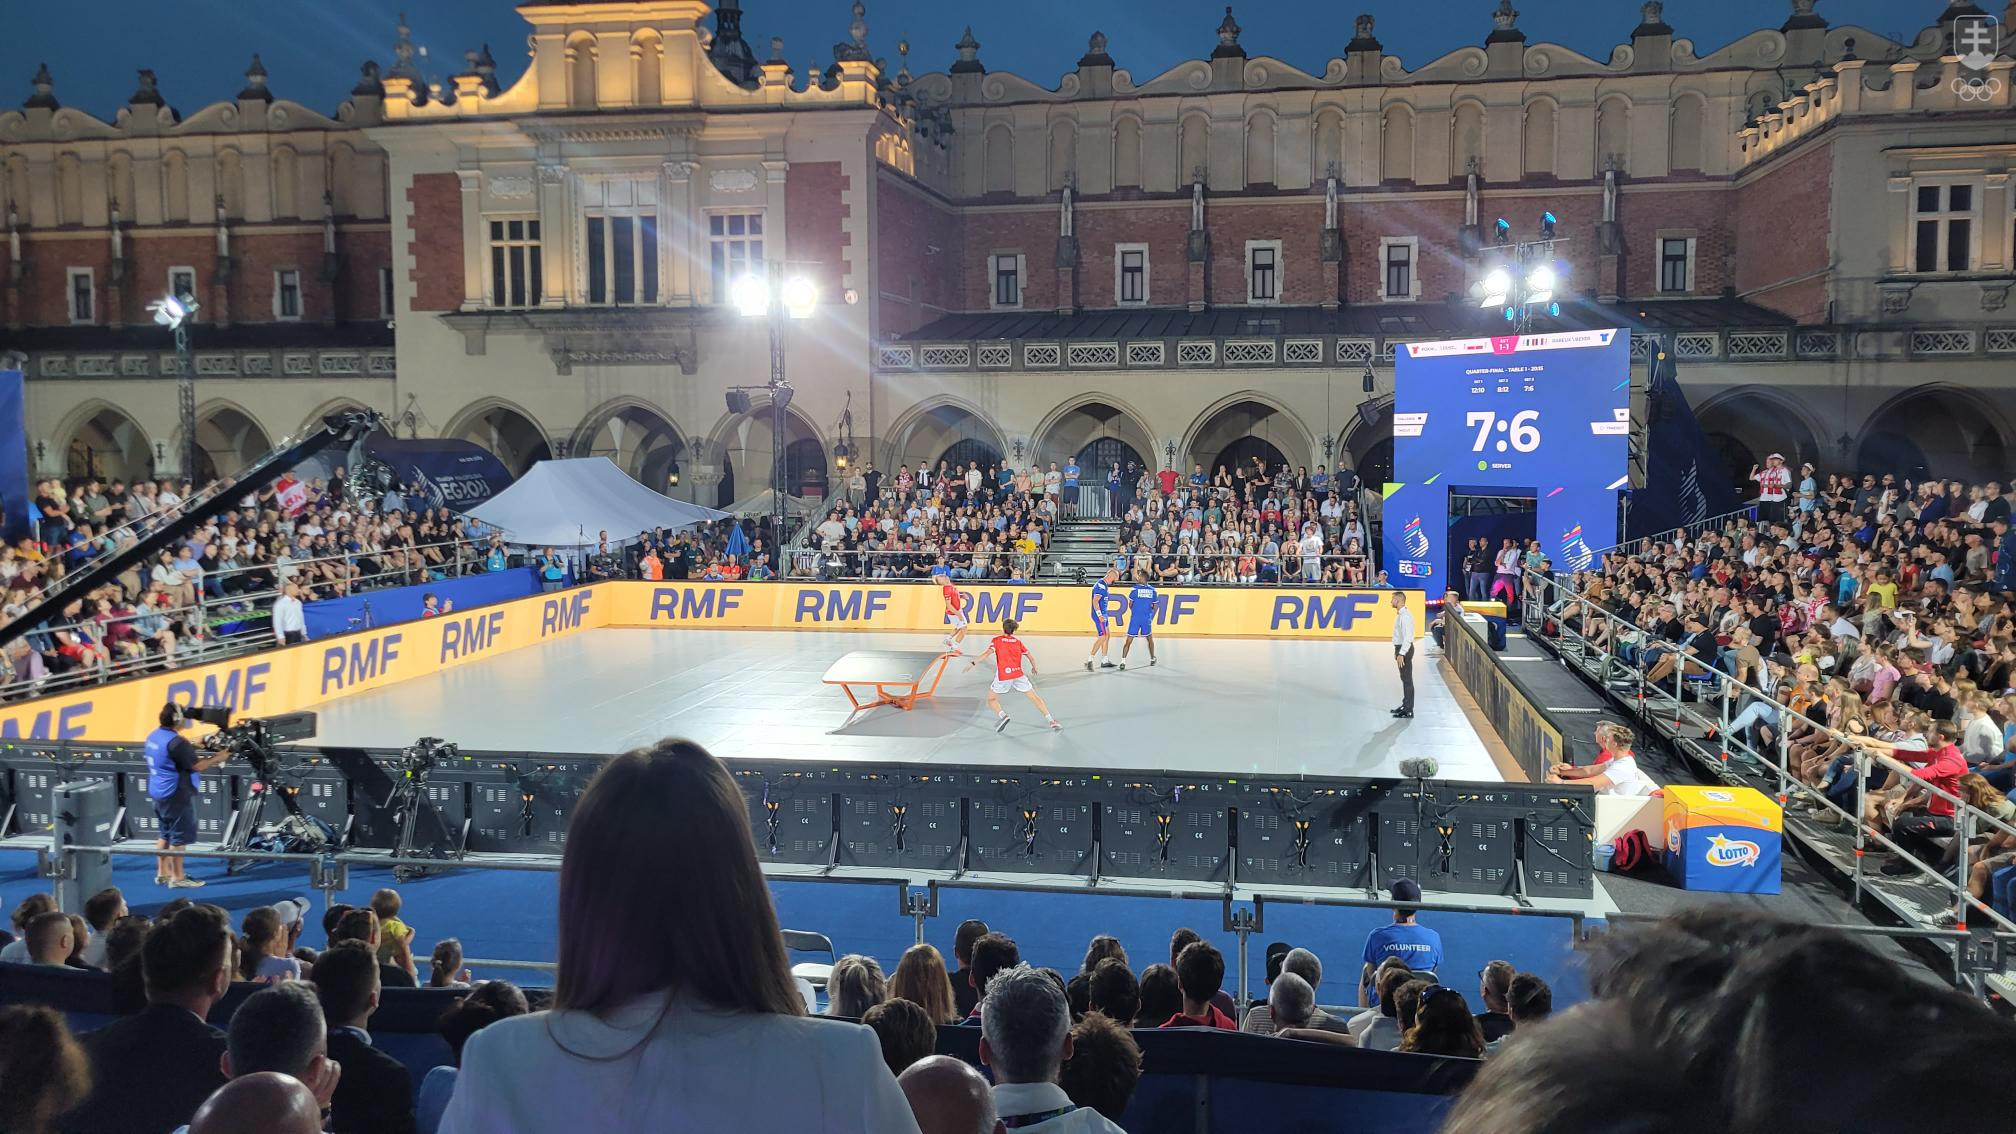 Keďže teqballové súťaže boli v samom centre Krakova, kde sa pohybujú masy ľudí, na zápase domáceho páru vo štvorhre bolo plné hľadisko. Na mnohých iných športoviskách EH však hľadiská zívali prázdnotou.